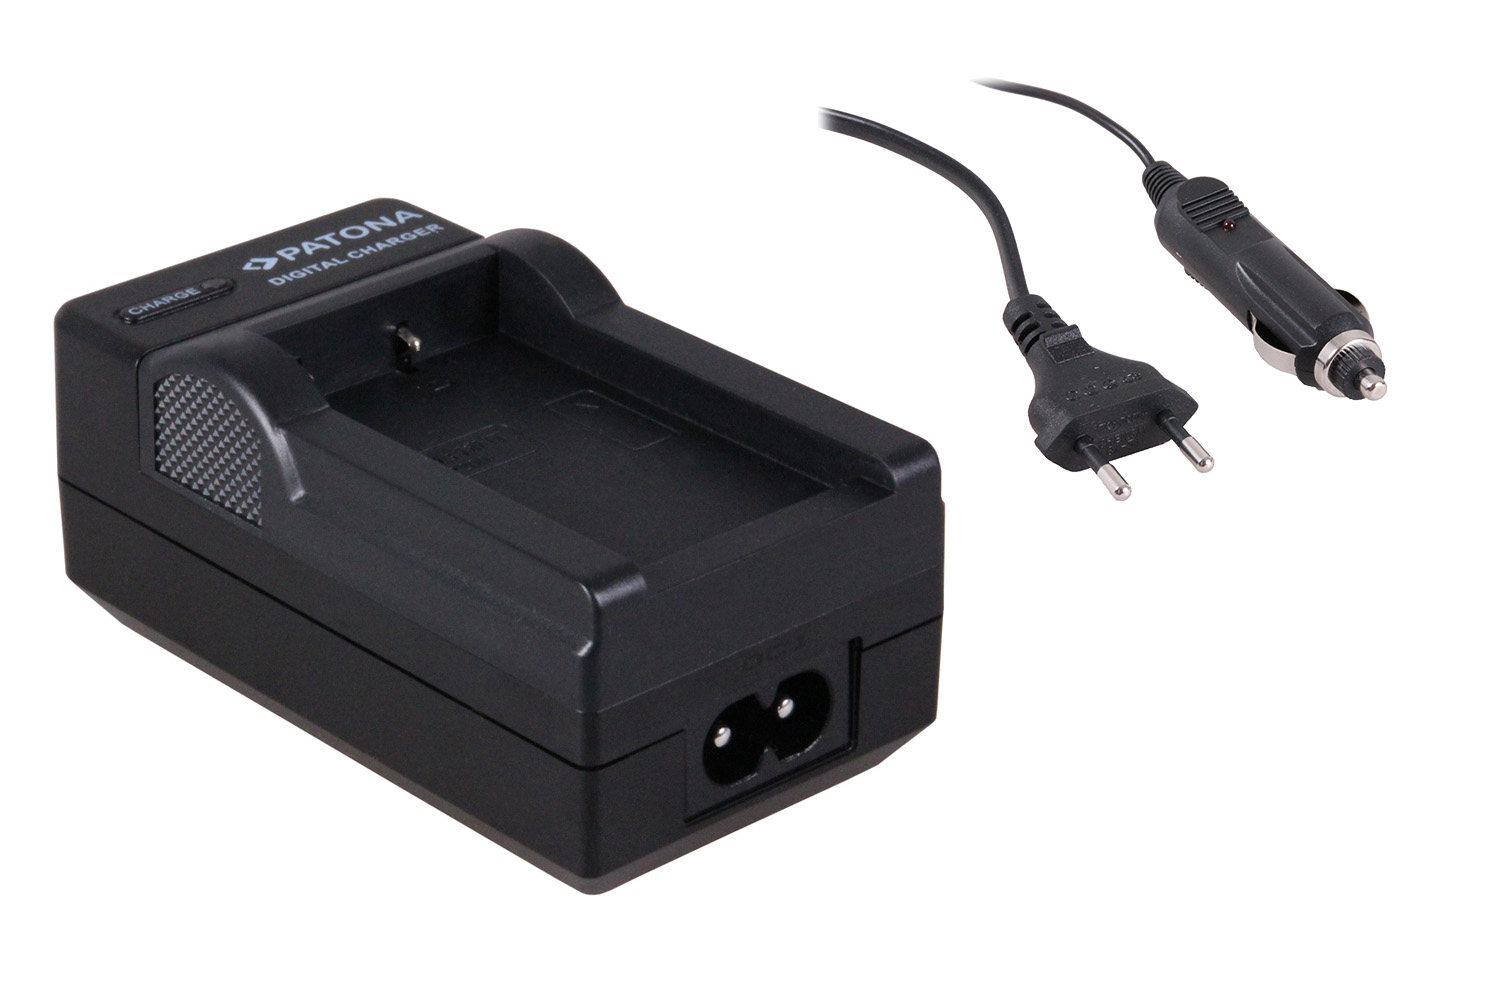 NP-200 KAMERA Akku-Ladegerät MICRO USB für KONICA MINOLTA Dimage Xt Biz 